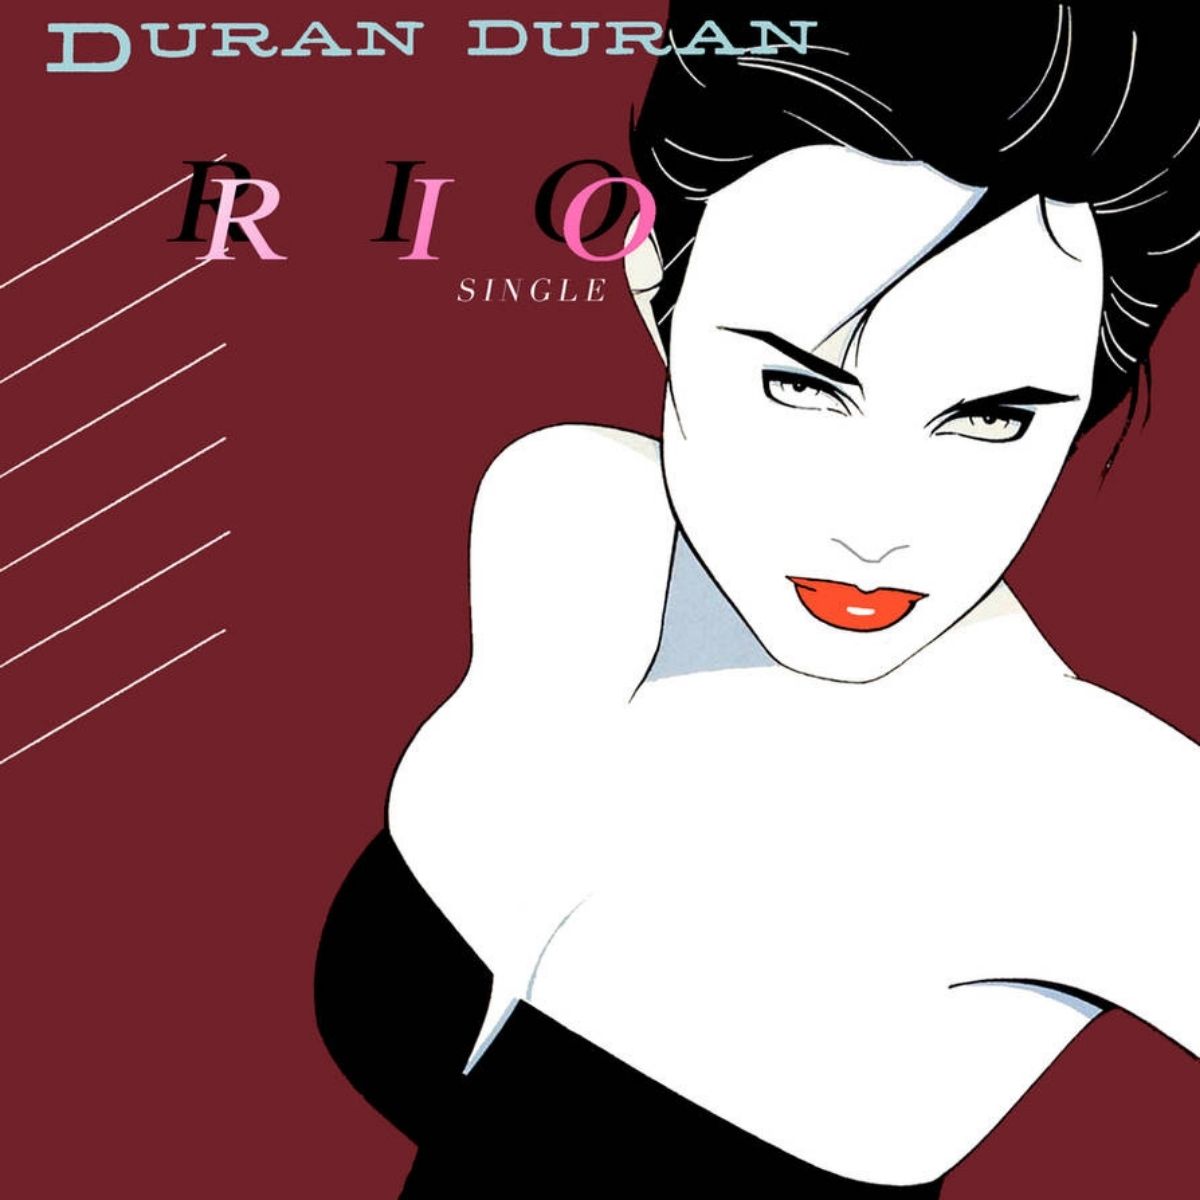 Portada del single "Rio" de Duran Duran